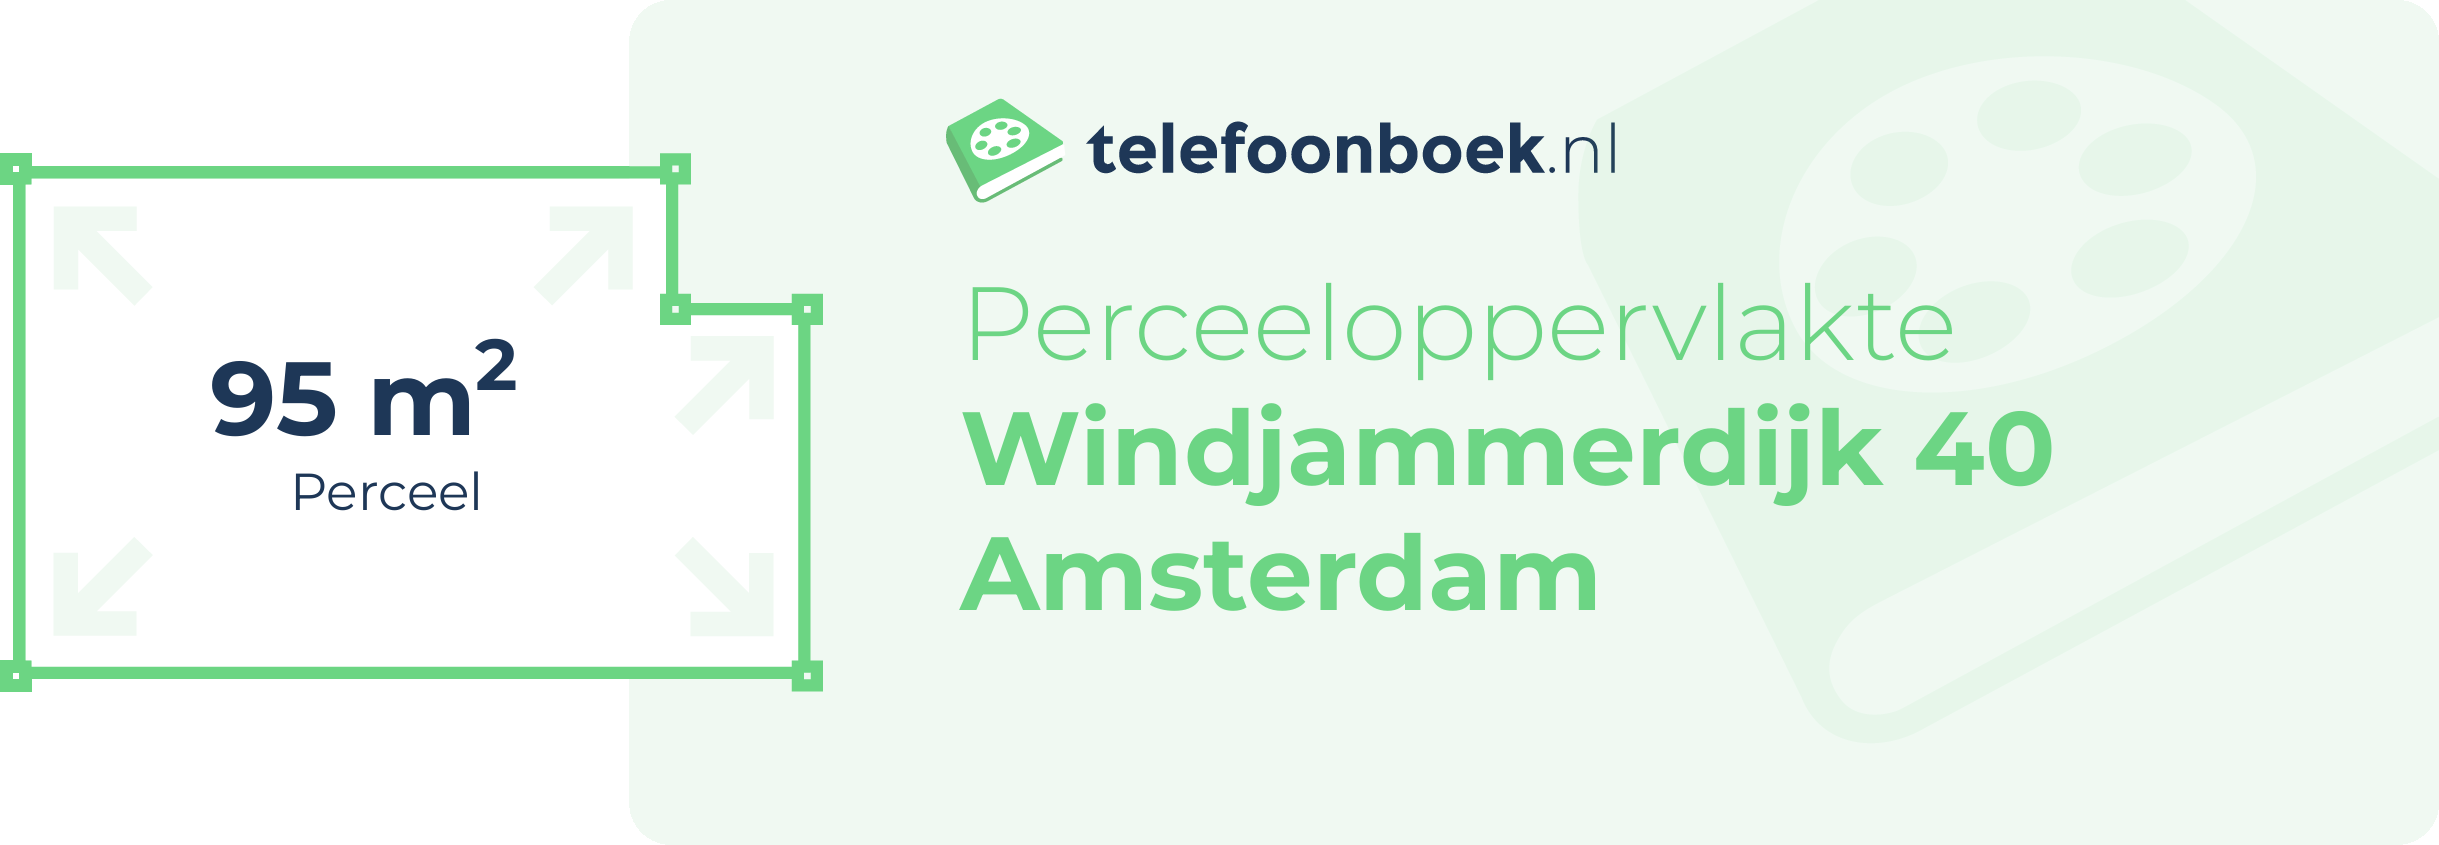 Perceeloppervlakte Windjammerdijk 40 Amsterdam